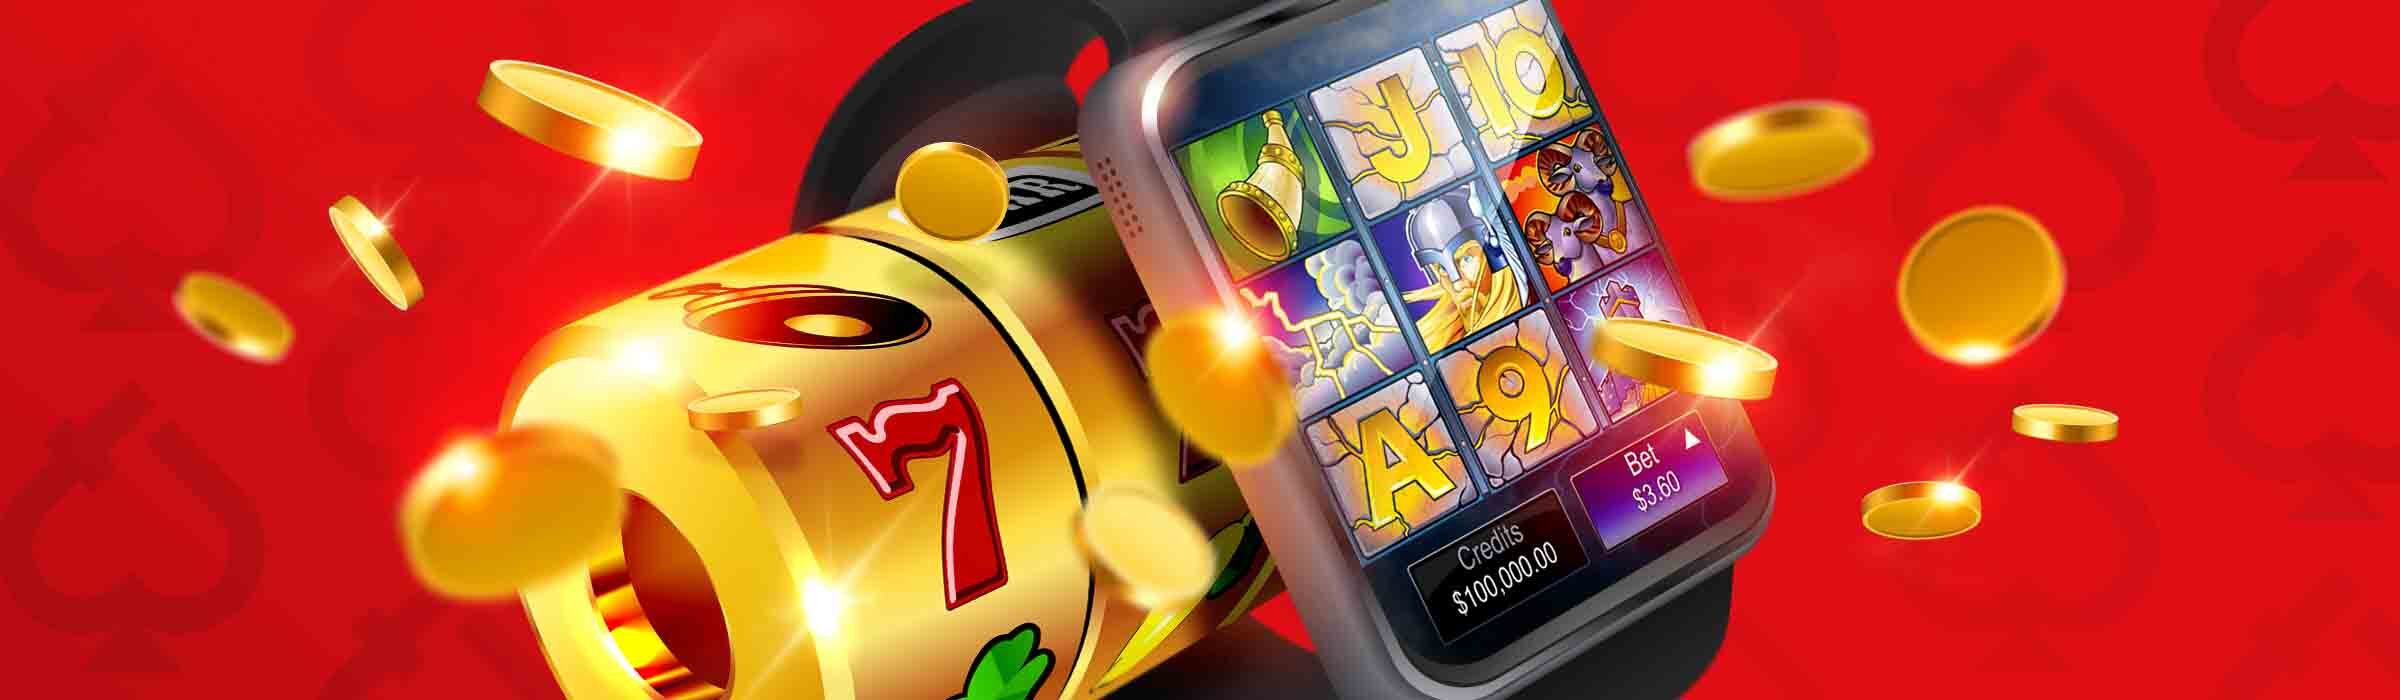 Online casino latest news игровые автоматы fruit cocktail играть бесплатно онлайн